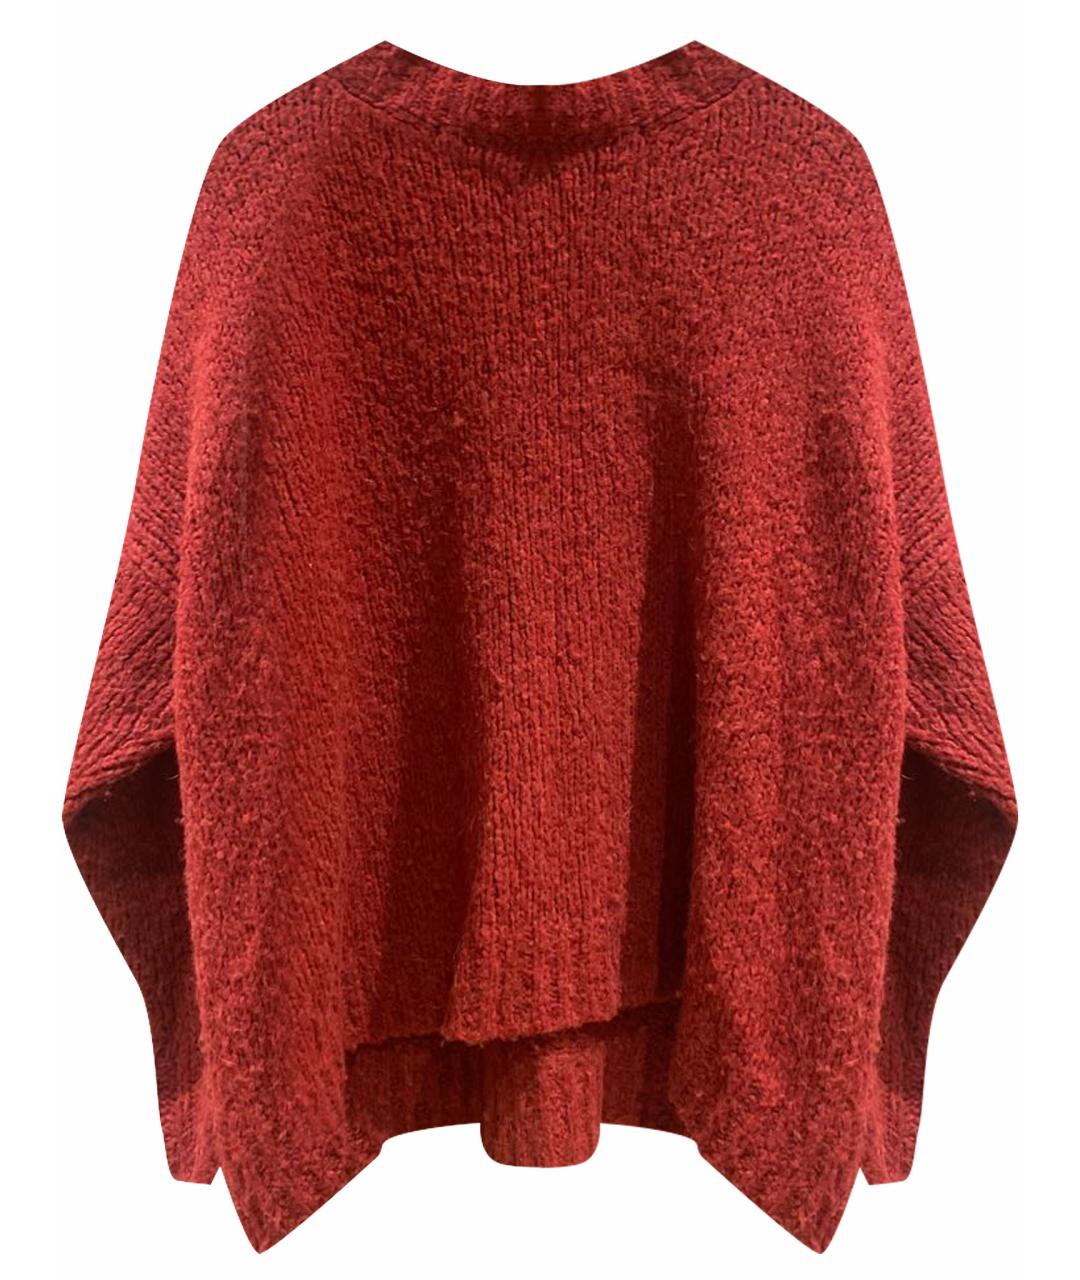 ISABEL MARANT ETOILE Бордовый шерстяной джемпер / свитер, фото 1